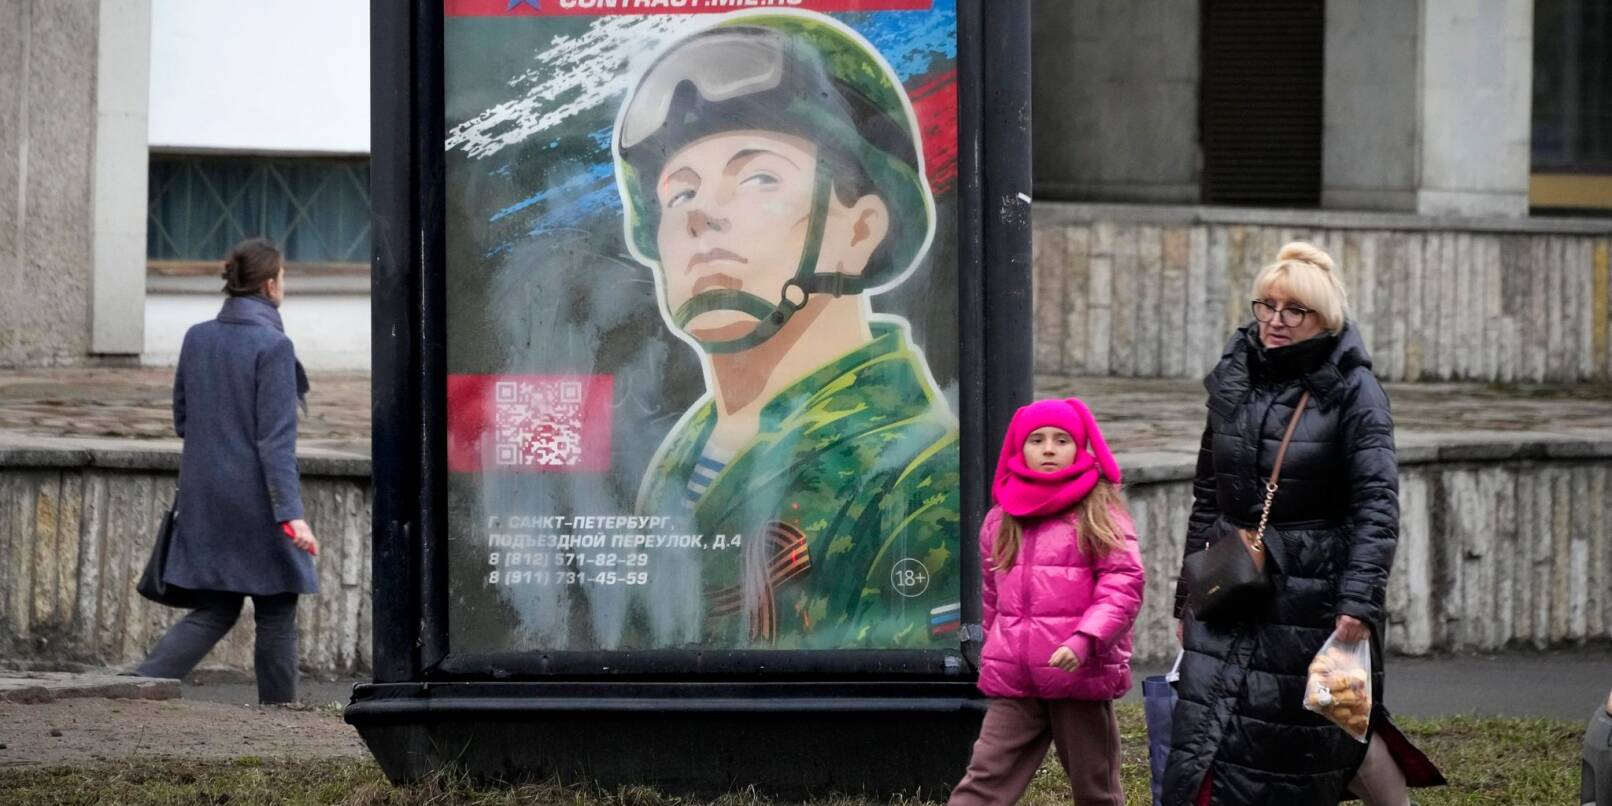 Rekrutierungsplakat der Armee mit der Aufschrift «Militärdienst unter Vertrag in den Streitkräften». Eine Kampagne zur Aufstockung der russischen Truppen in der Ukraine mit mehr Soldaten scheint wieder im Gange zu sein.